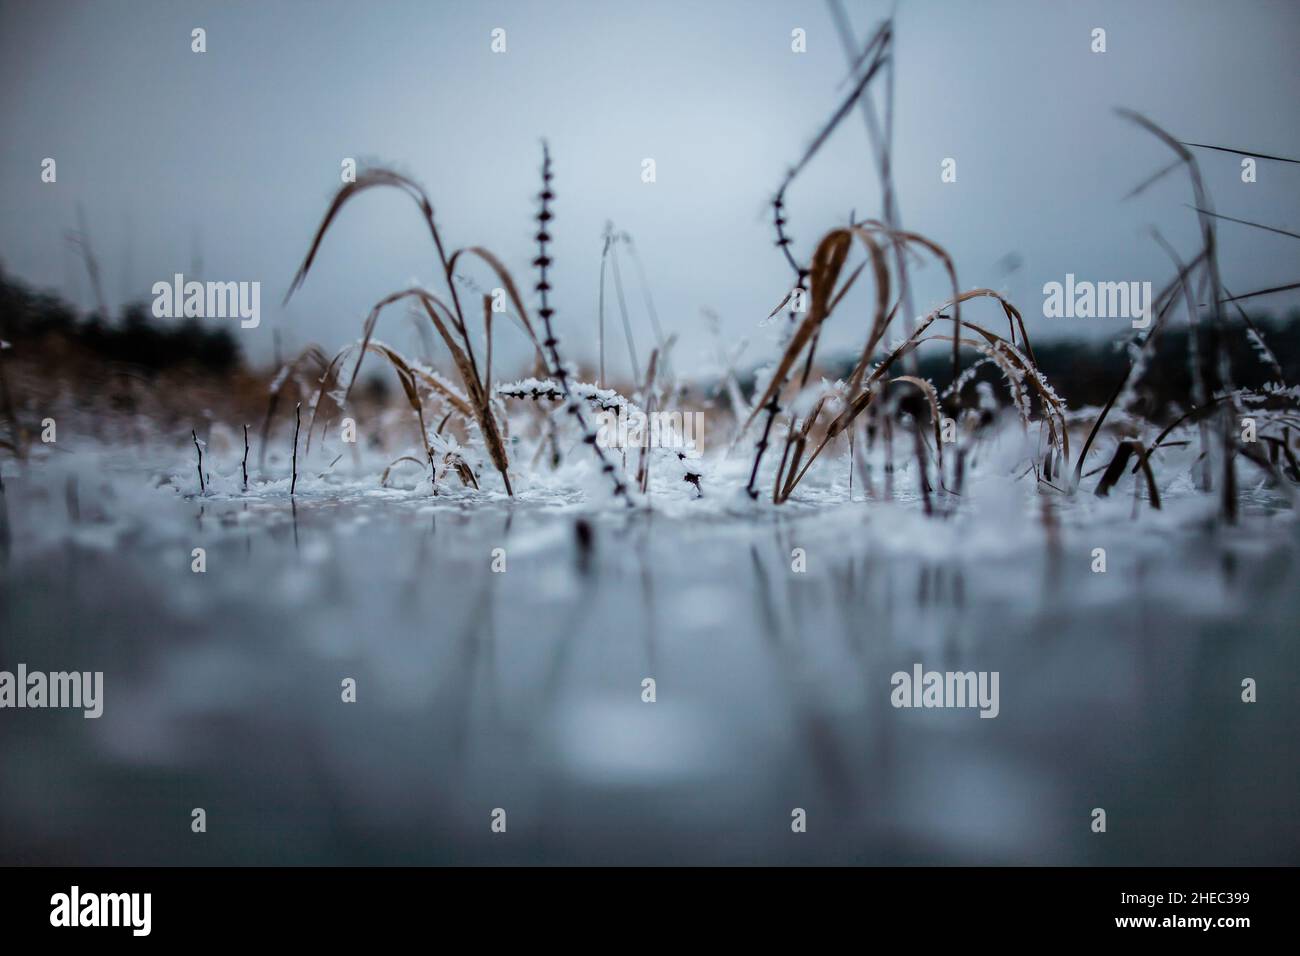 Fotografia freelensing di piante surgelate in lago congelato, fotografia artistica free-lensing di piante innevate sporgono dal ghiaccio su acqua, piante surgelate Foto Stock